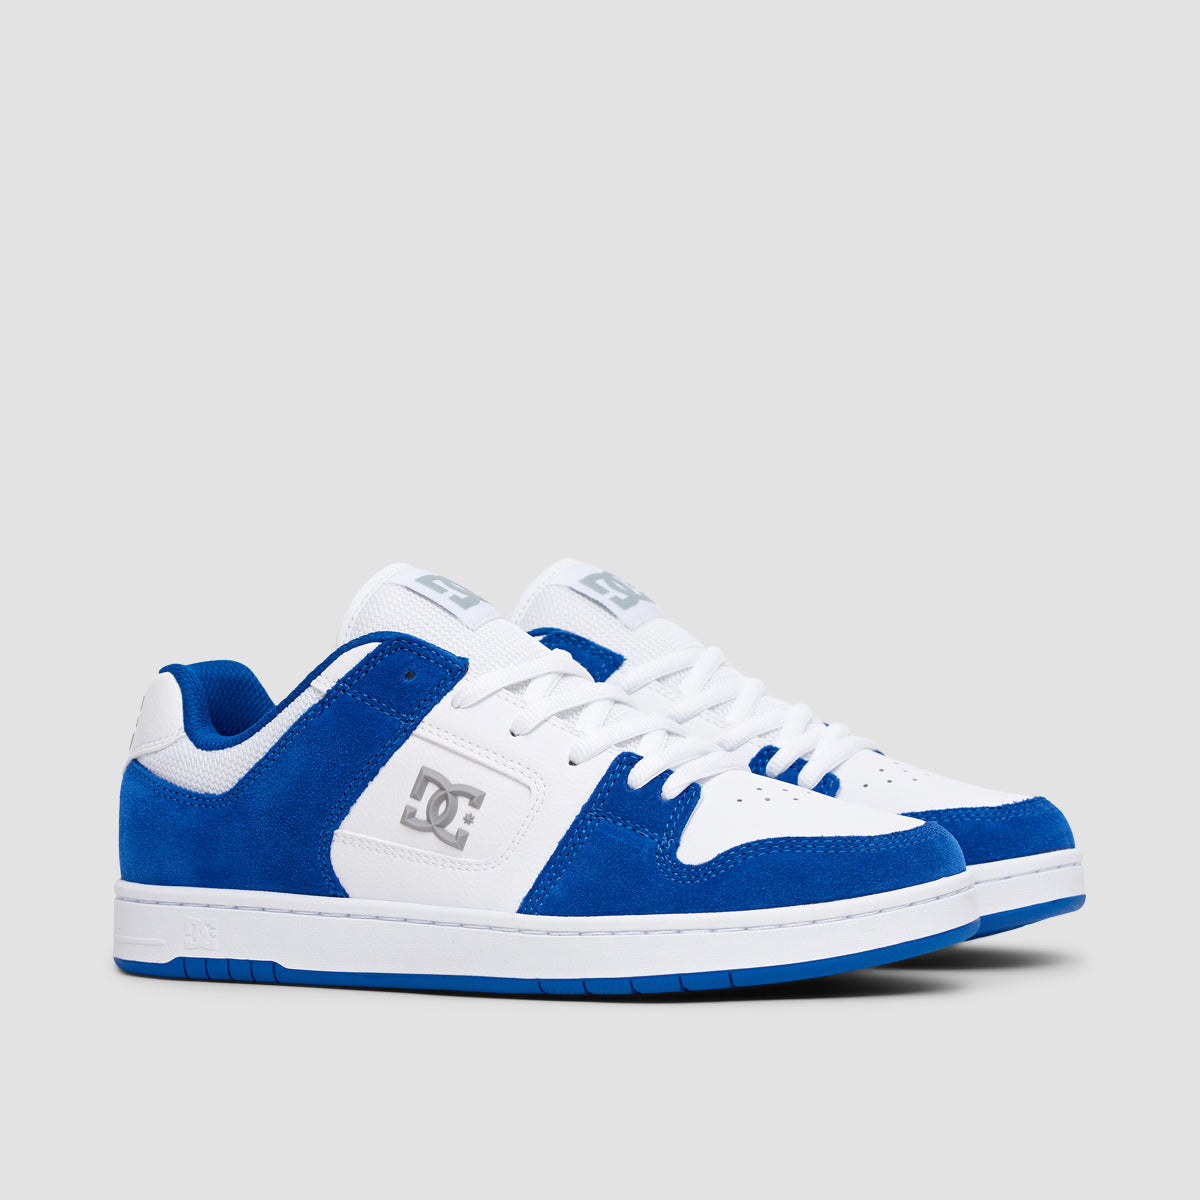 DC Manteca 4 S Shoes - Blue/White